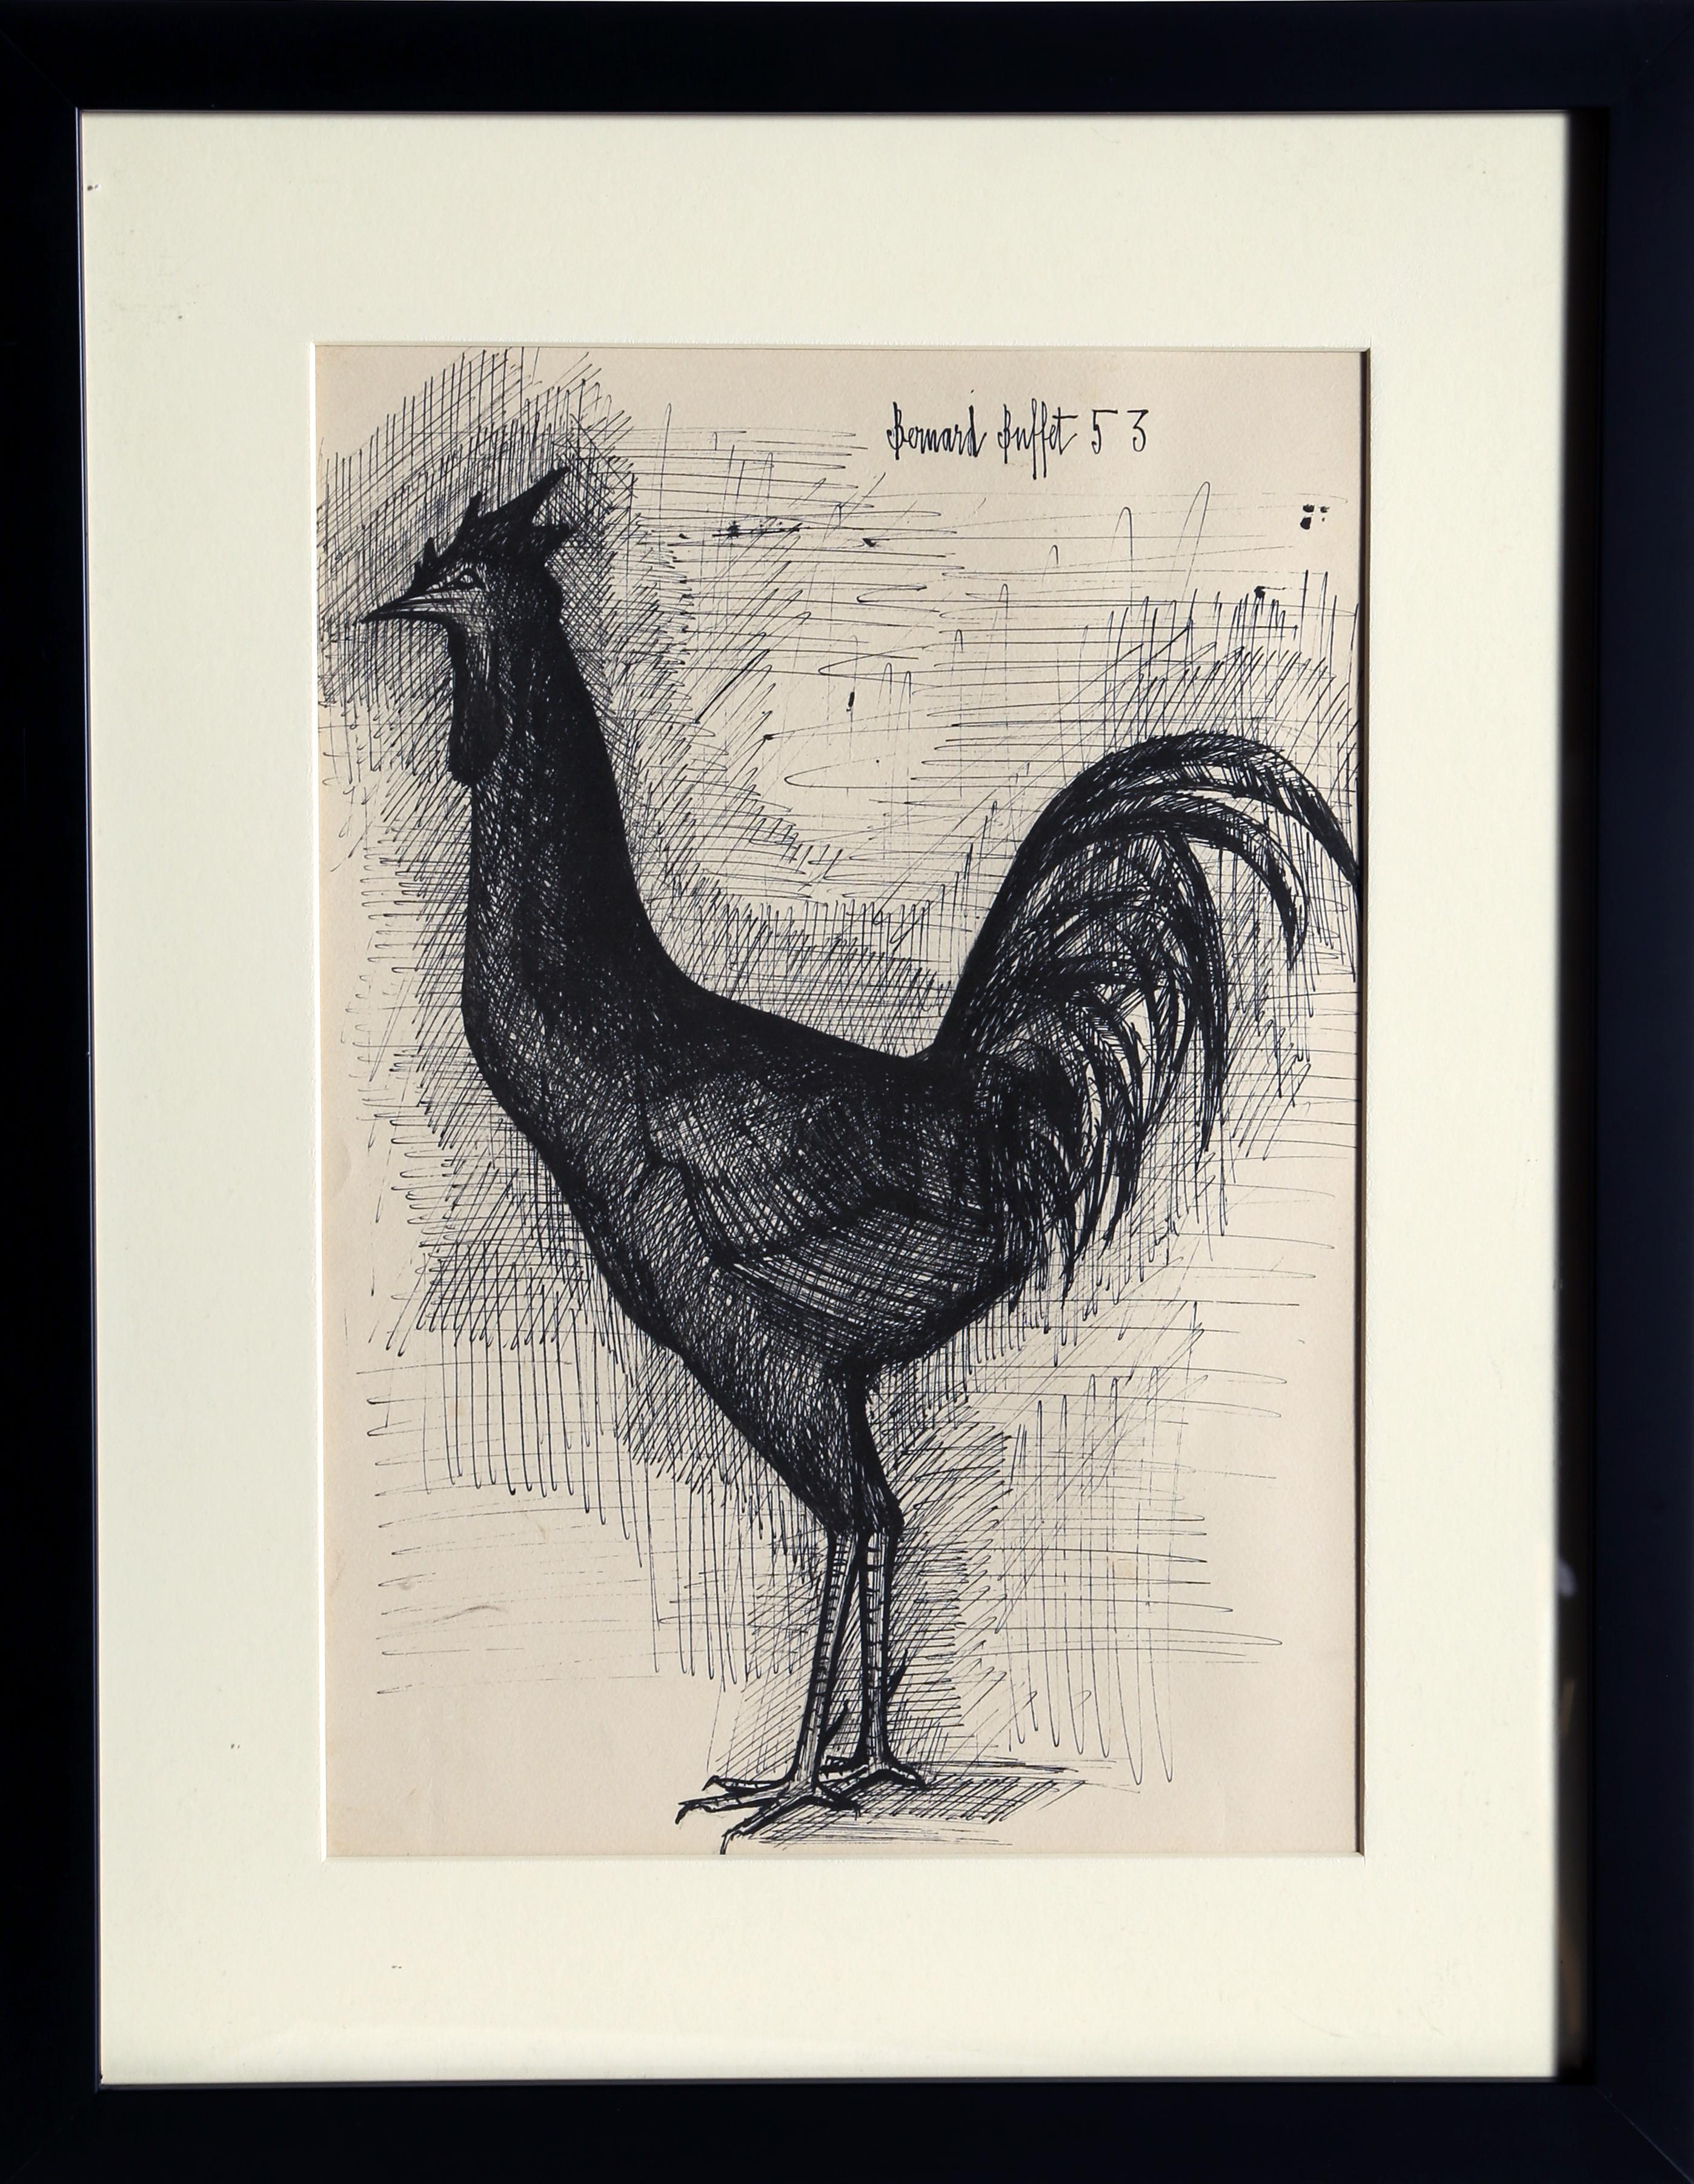 Künstler: Bernard Buffet, Franzose (1928 - 1999)
Titel: Hahn
Jahr: 1953
Medium: Lithographie auf Karton aufgezogen, in der Platte signiert
Bildgröße: 15 x 10 Zoll (50,8 x 36,83 cm)
Rahmen: 22 x 17 Zoll